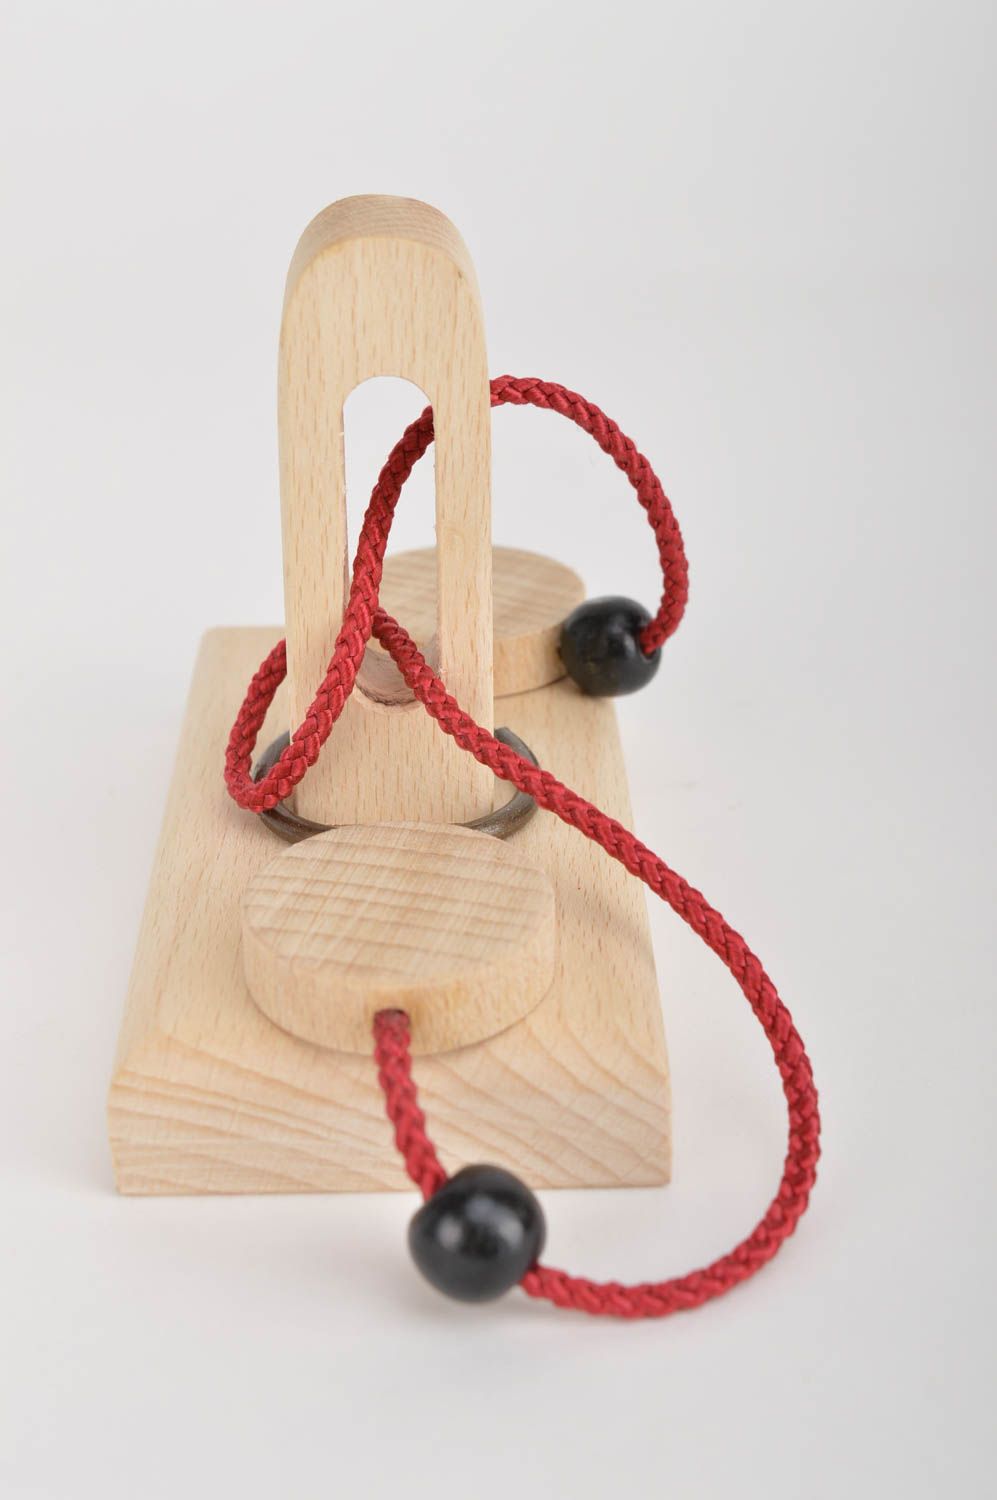 Handmade Spielzeug Holz Geschenk für Kinder Spielzeug aus Holz ausbildend toll foto 4